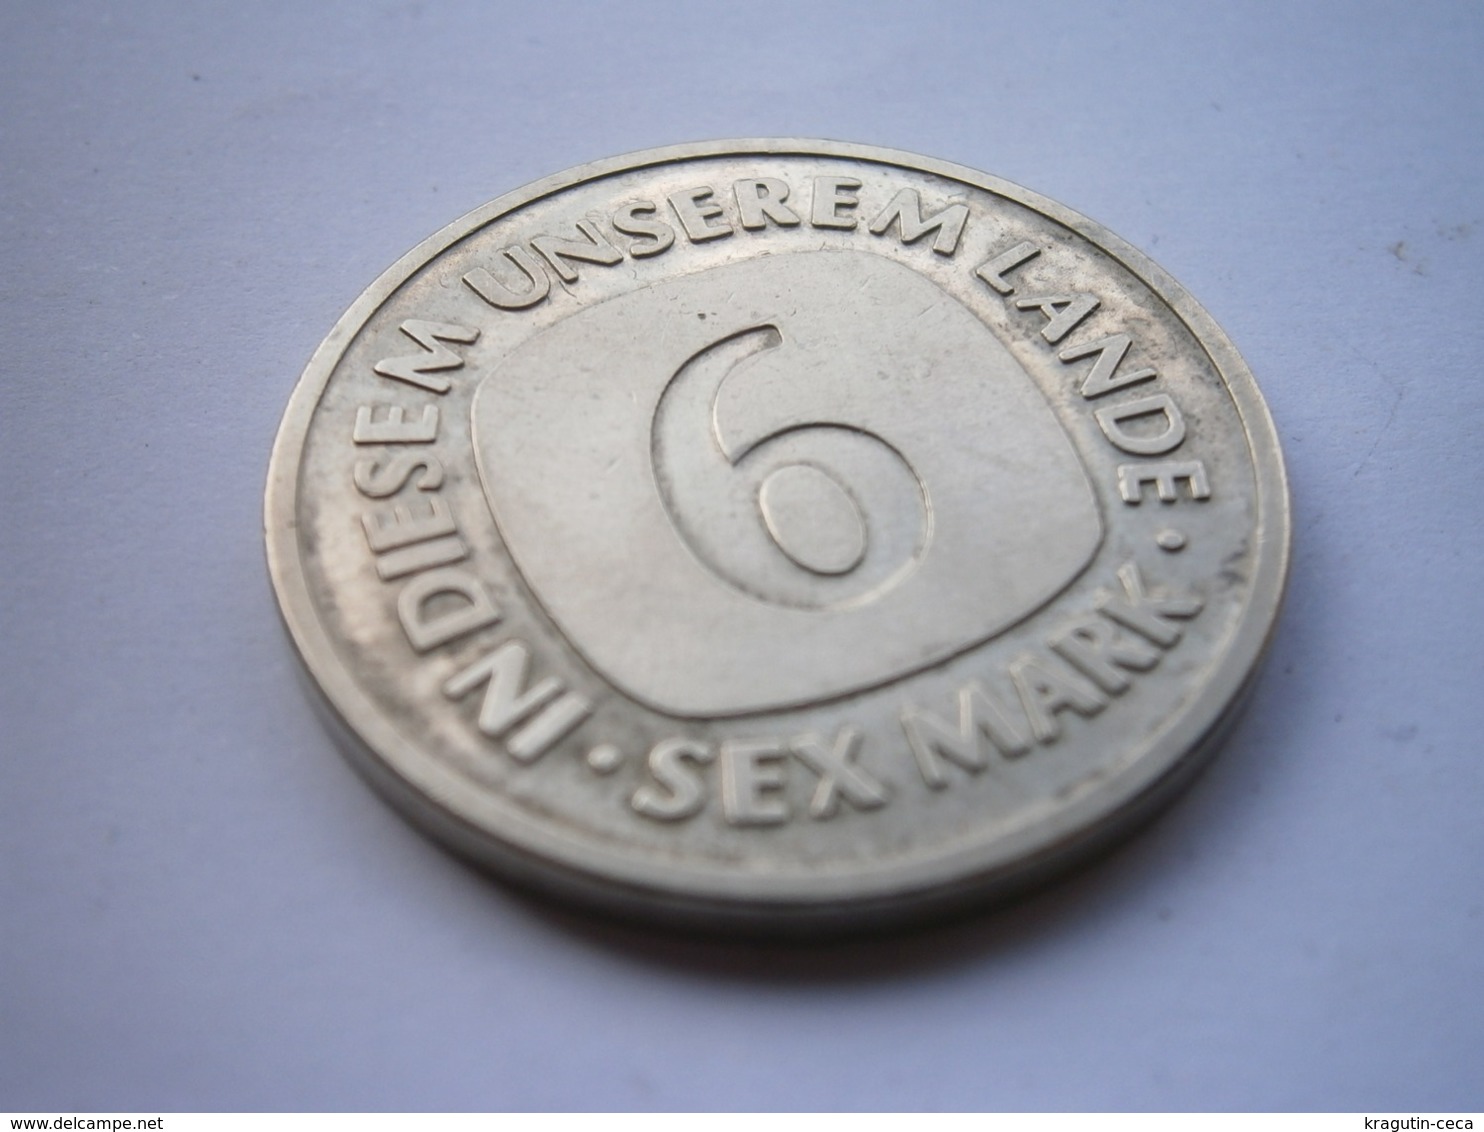 1992 DEUTSCHLAND MUNZE Germany BRD 6 Sex Mark Coin EINIGKEIT UND SEX UND FREIHEIT IN DIESEM UNSERE LANDE - Other & Unclassified